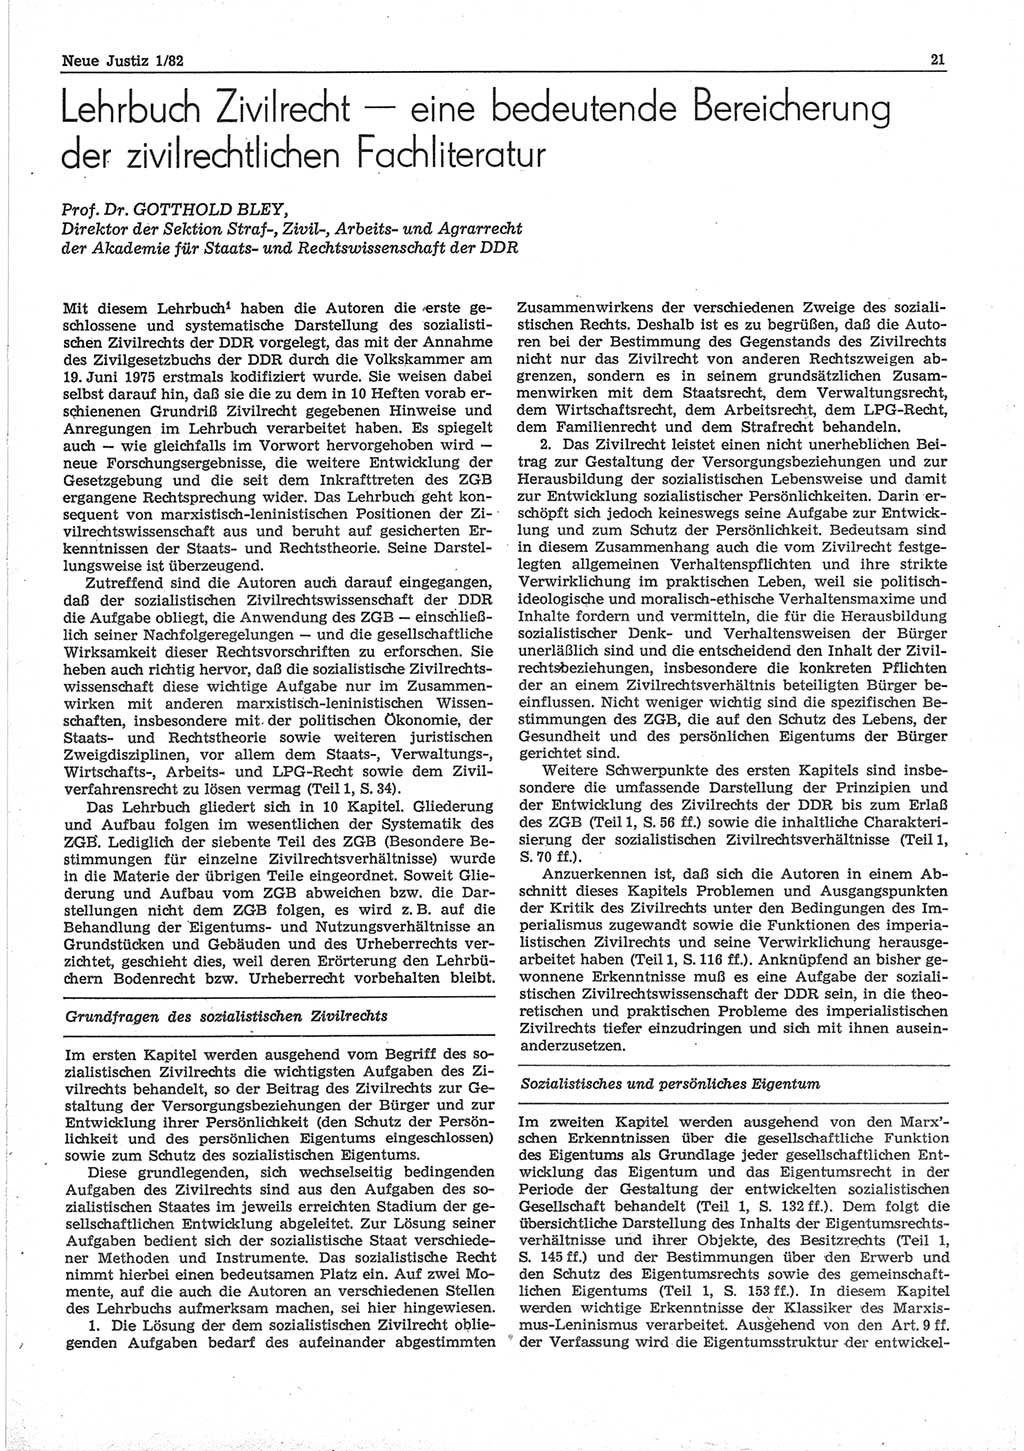 Neue Justiz (NJ), Zeitschrift für sozialistisches Recht und Gesetzlichkeit [Deutsche Demokratische Republik (DDR)], 36. Jahrgang 1982, Seite 21 (NJ DDR 1982, S. 21)